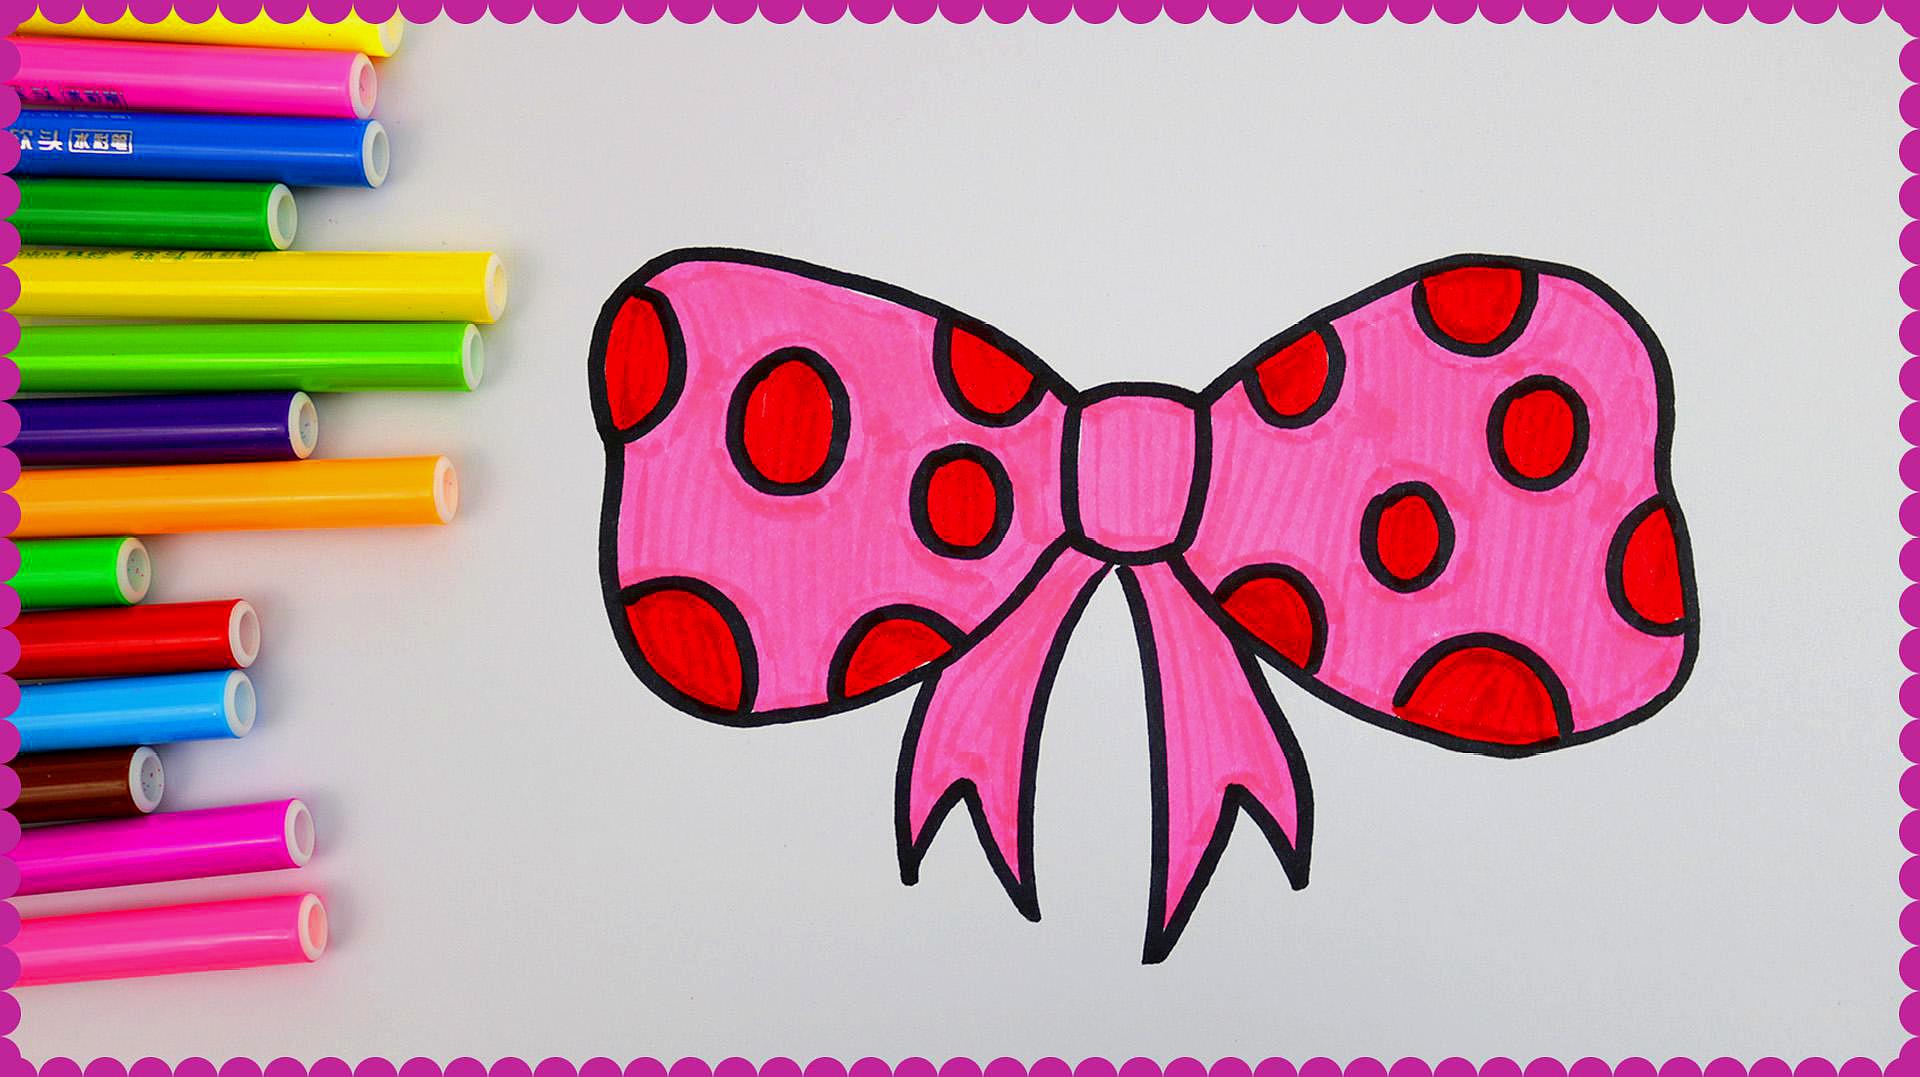 画一个粉红色的蝴蝶结,宝宝最爱的简笔画涂色游戏!